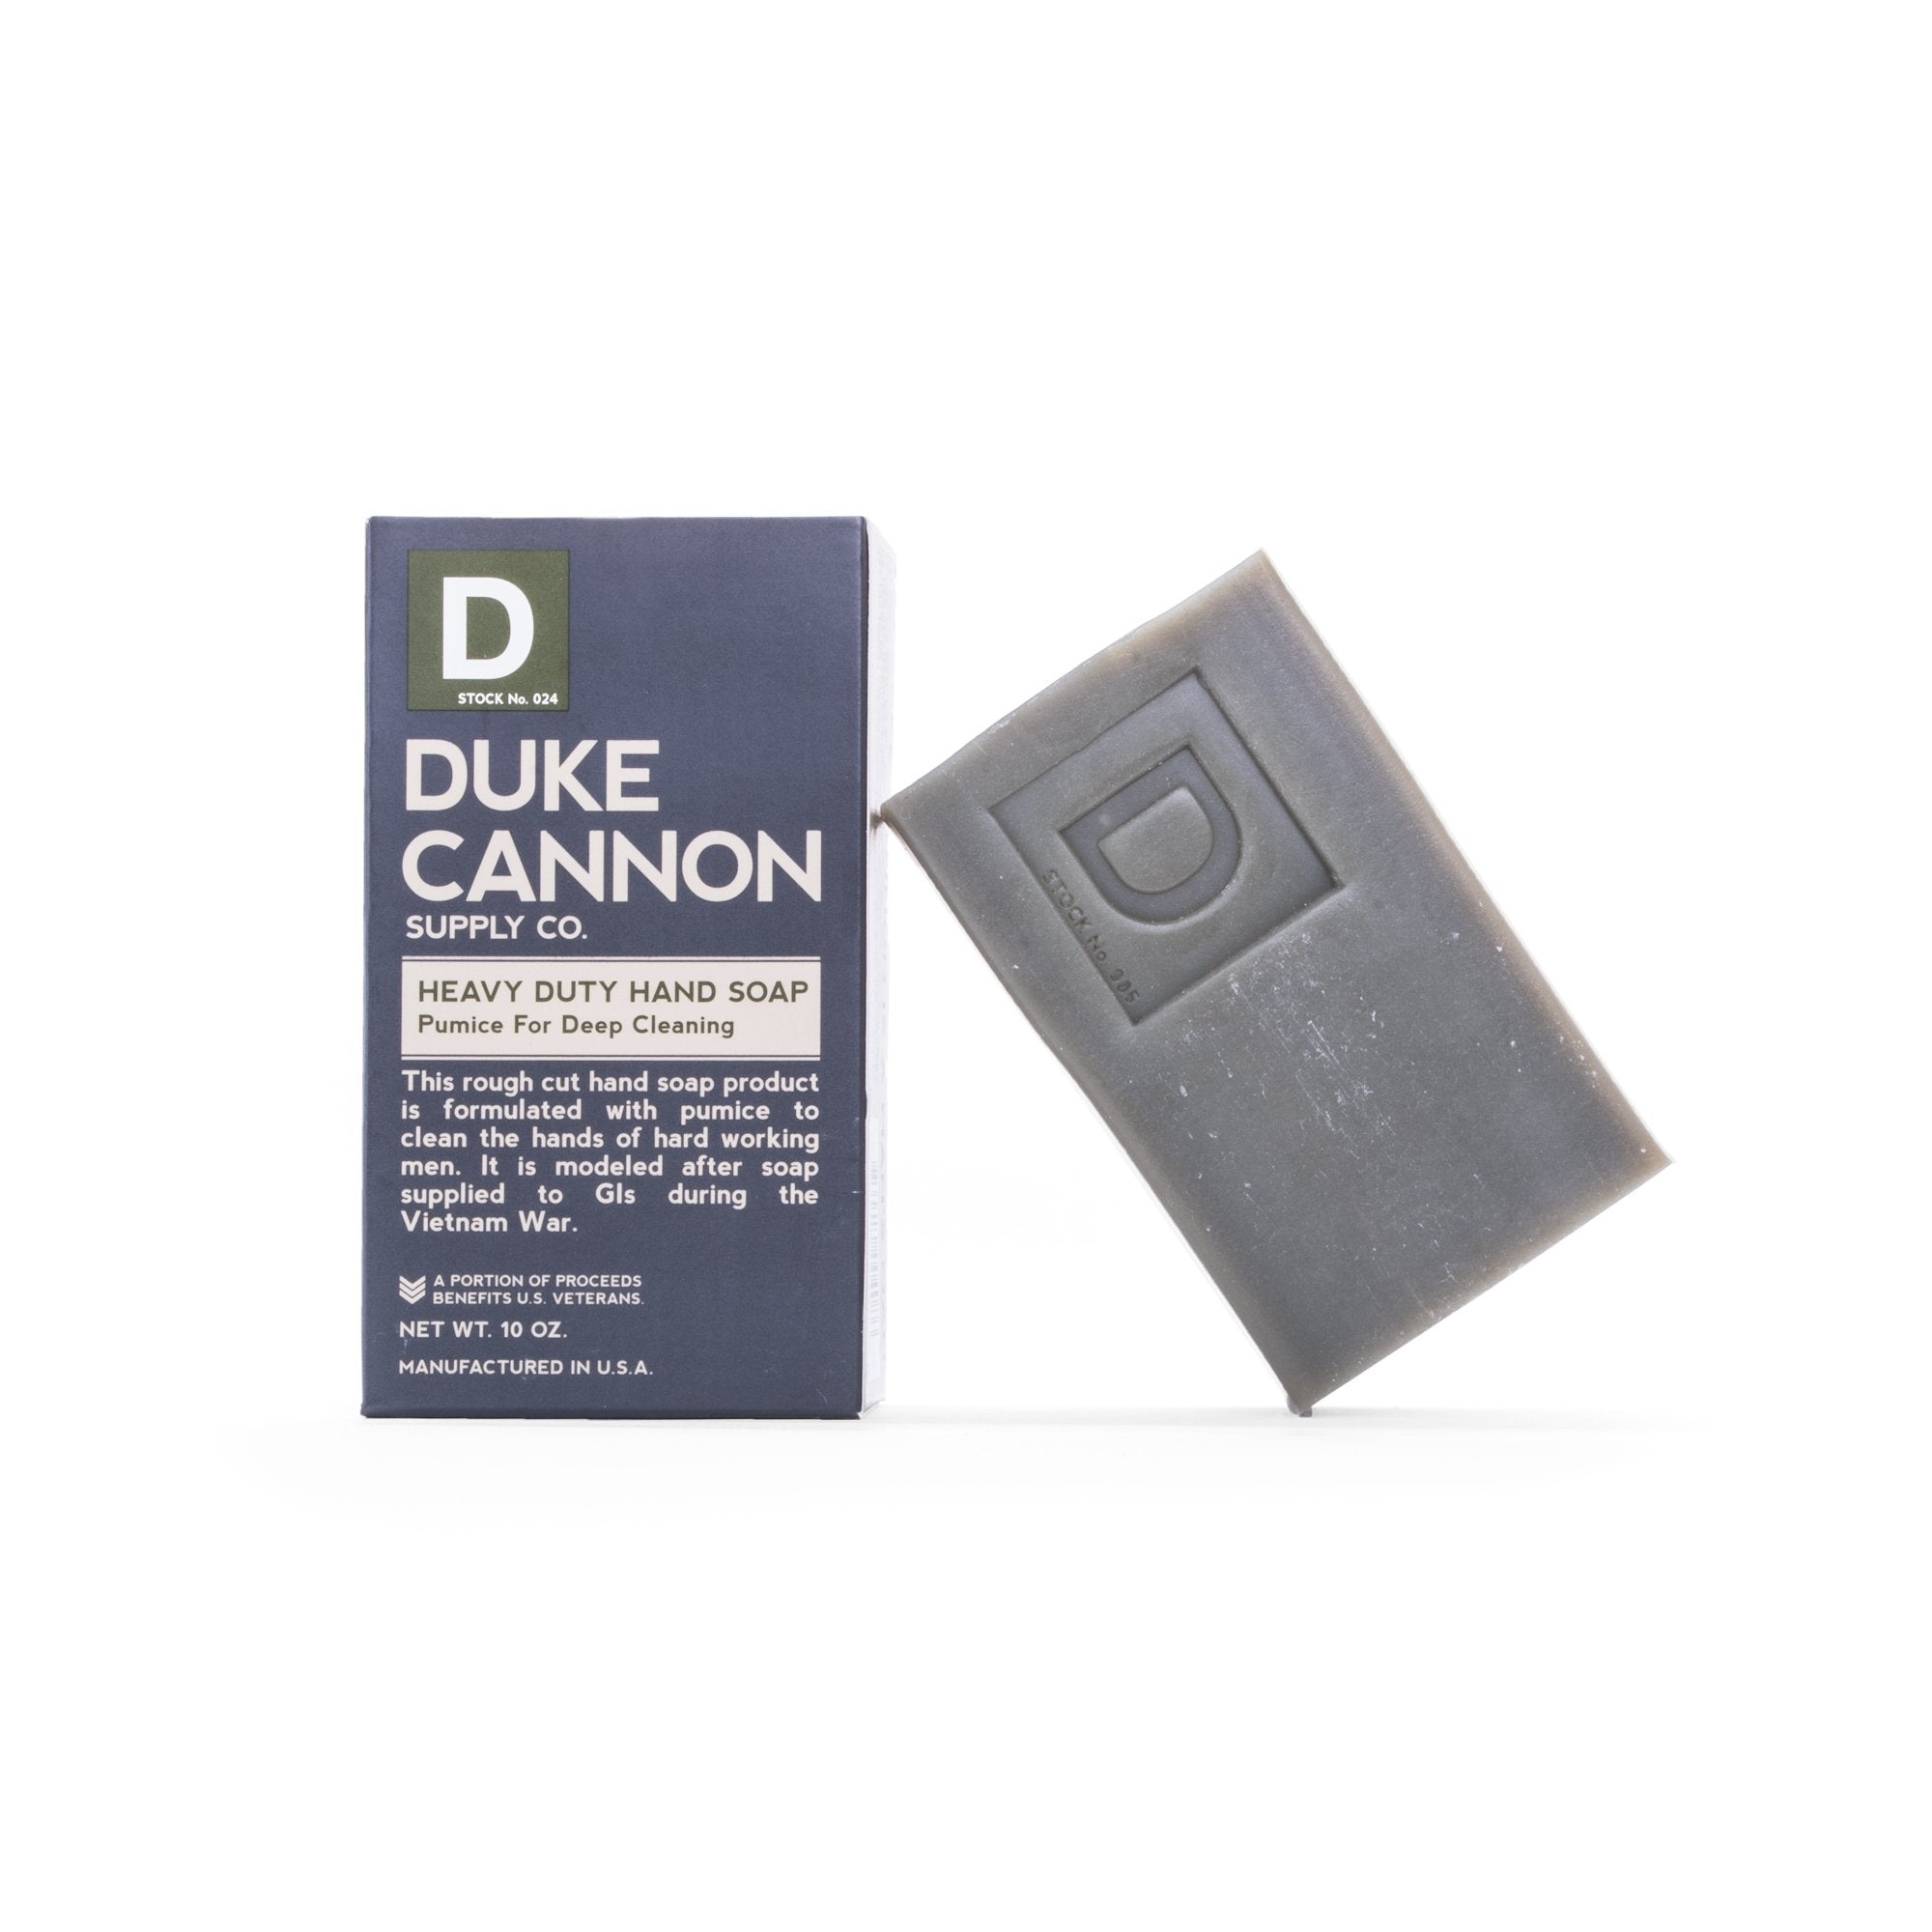 DUKE CANNON- Heavy Duty Hand Soap